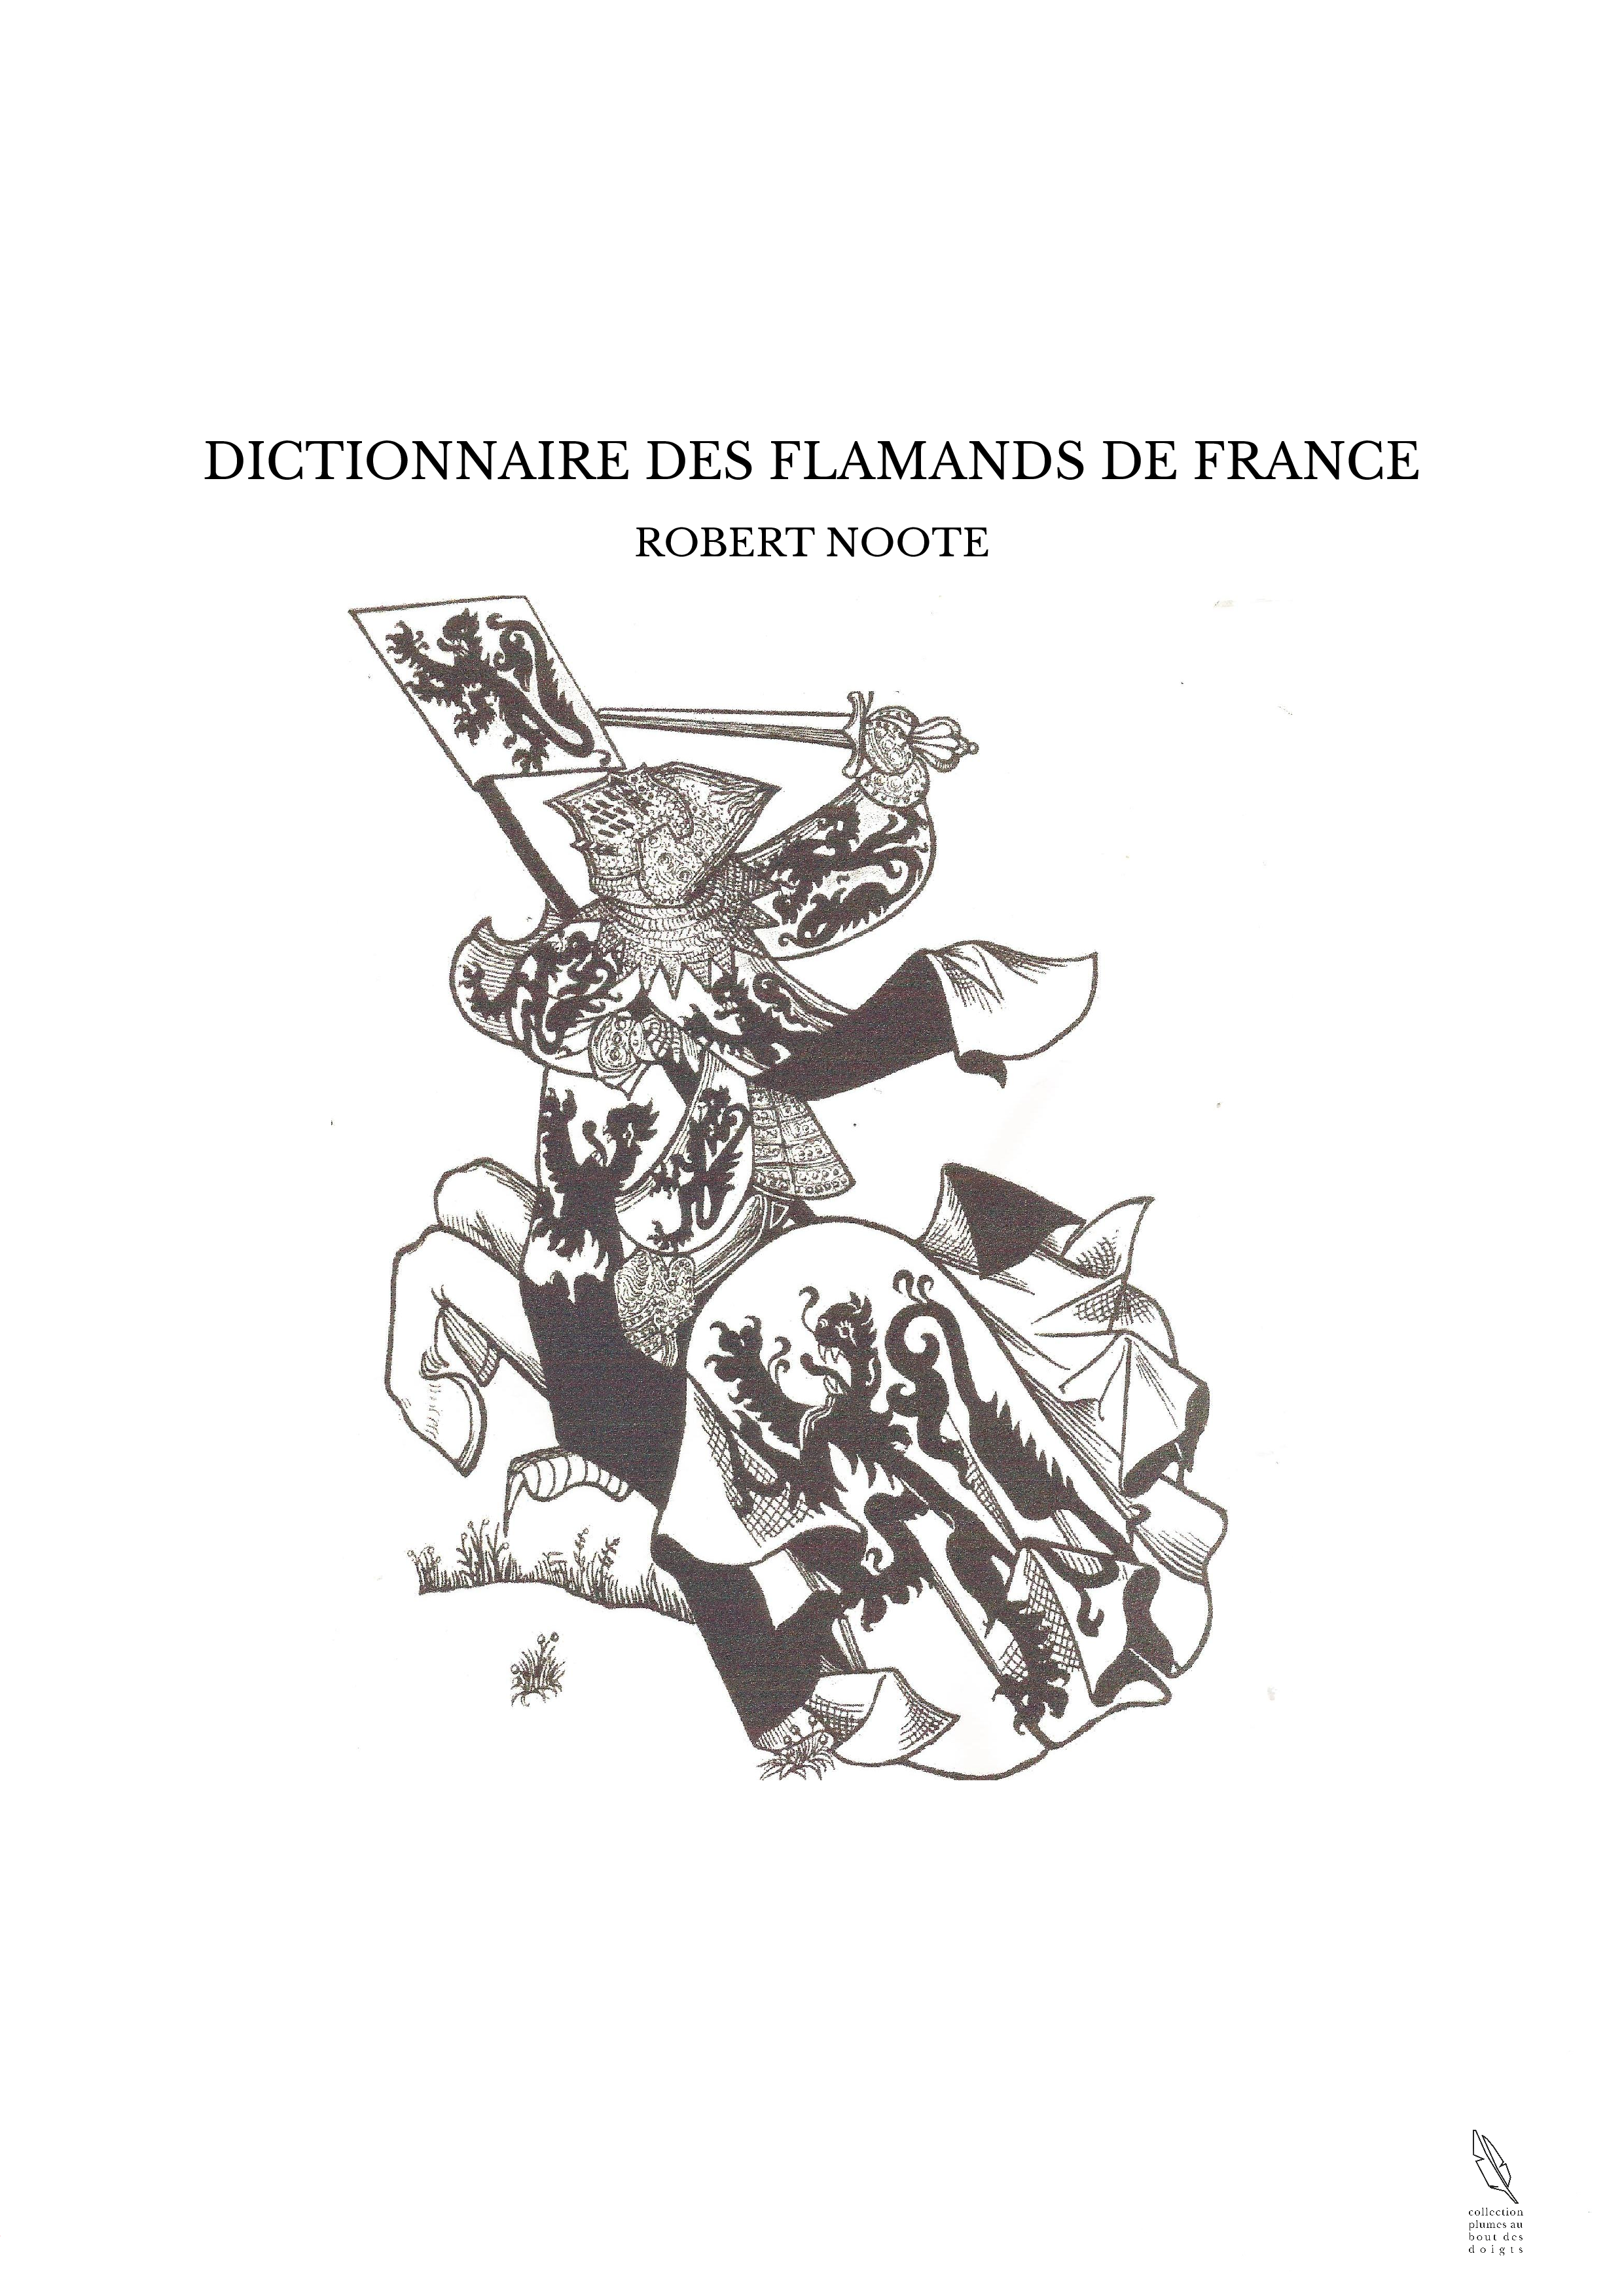 DICTIONNAIRE DES FLAMANDS DE FRANCE